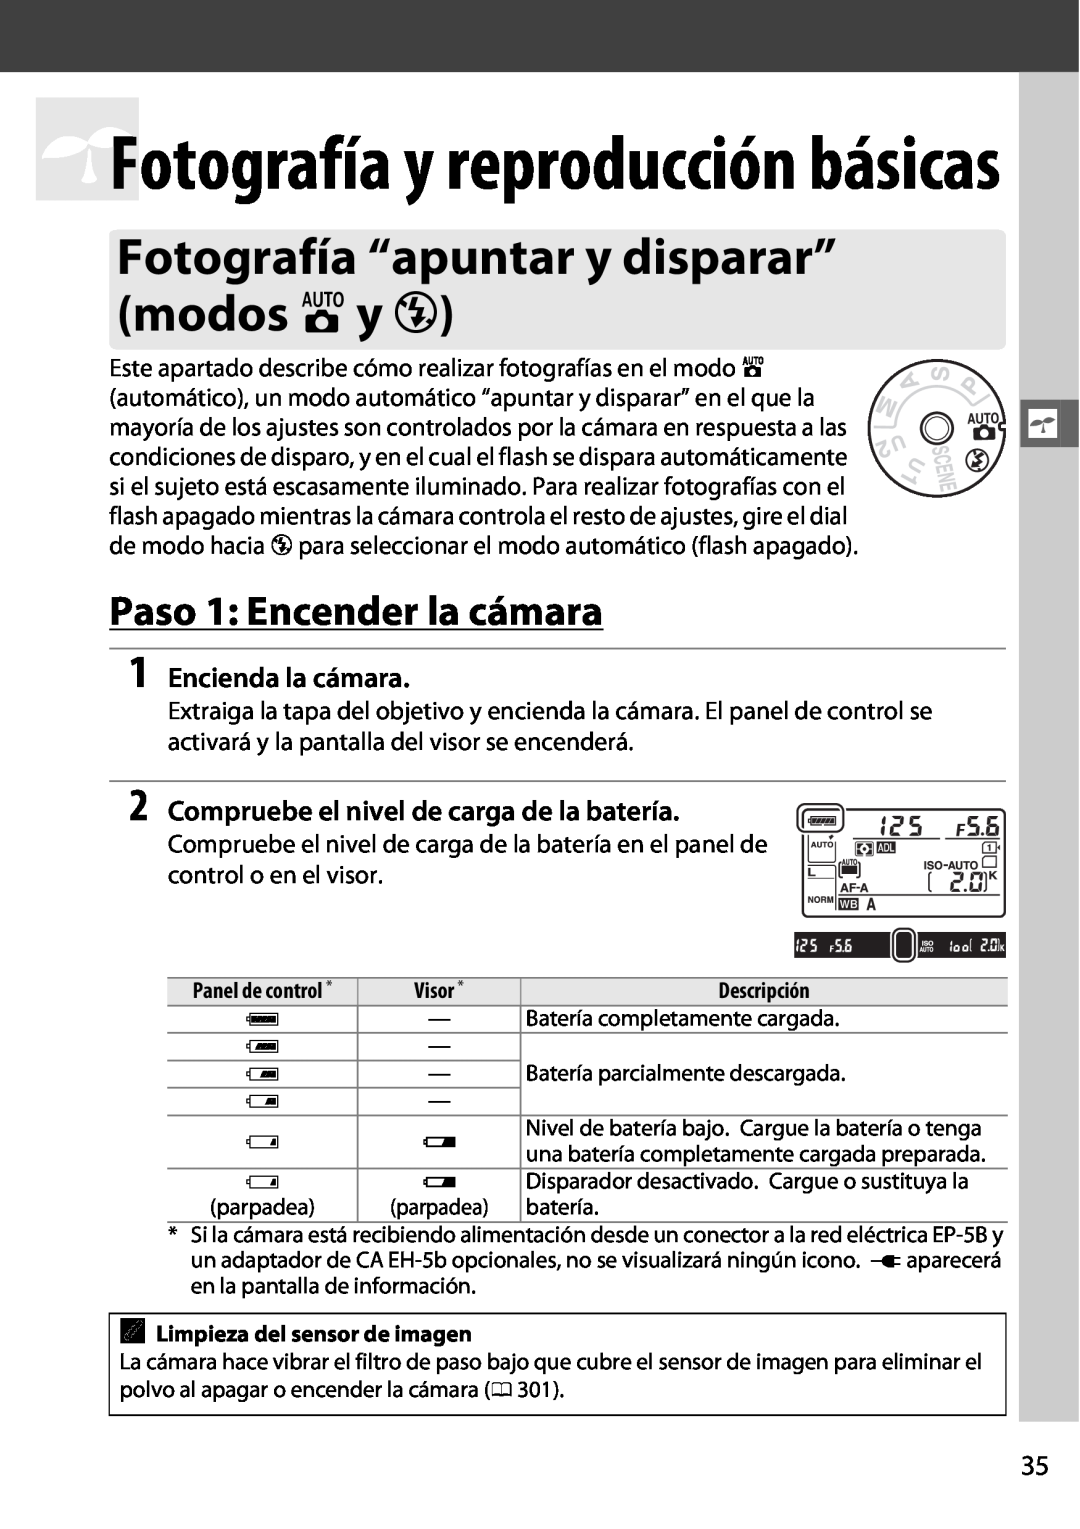 Nikon D600 manual Fotografía “apuntar y disparar” modos iy j, Paso 1 Encender la cámara, sFotografía y reproducción básicas 